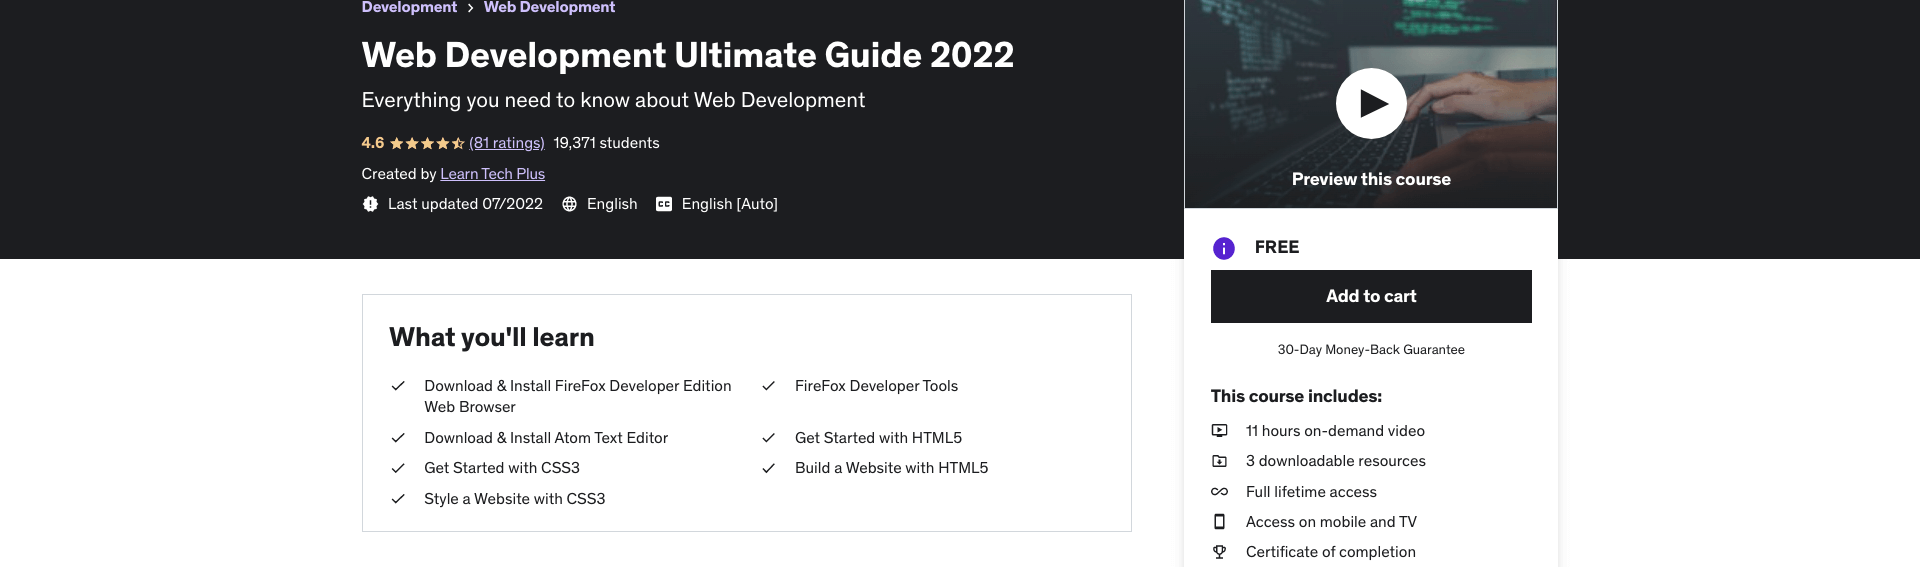 Web Development Ultimate Guide 2022